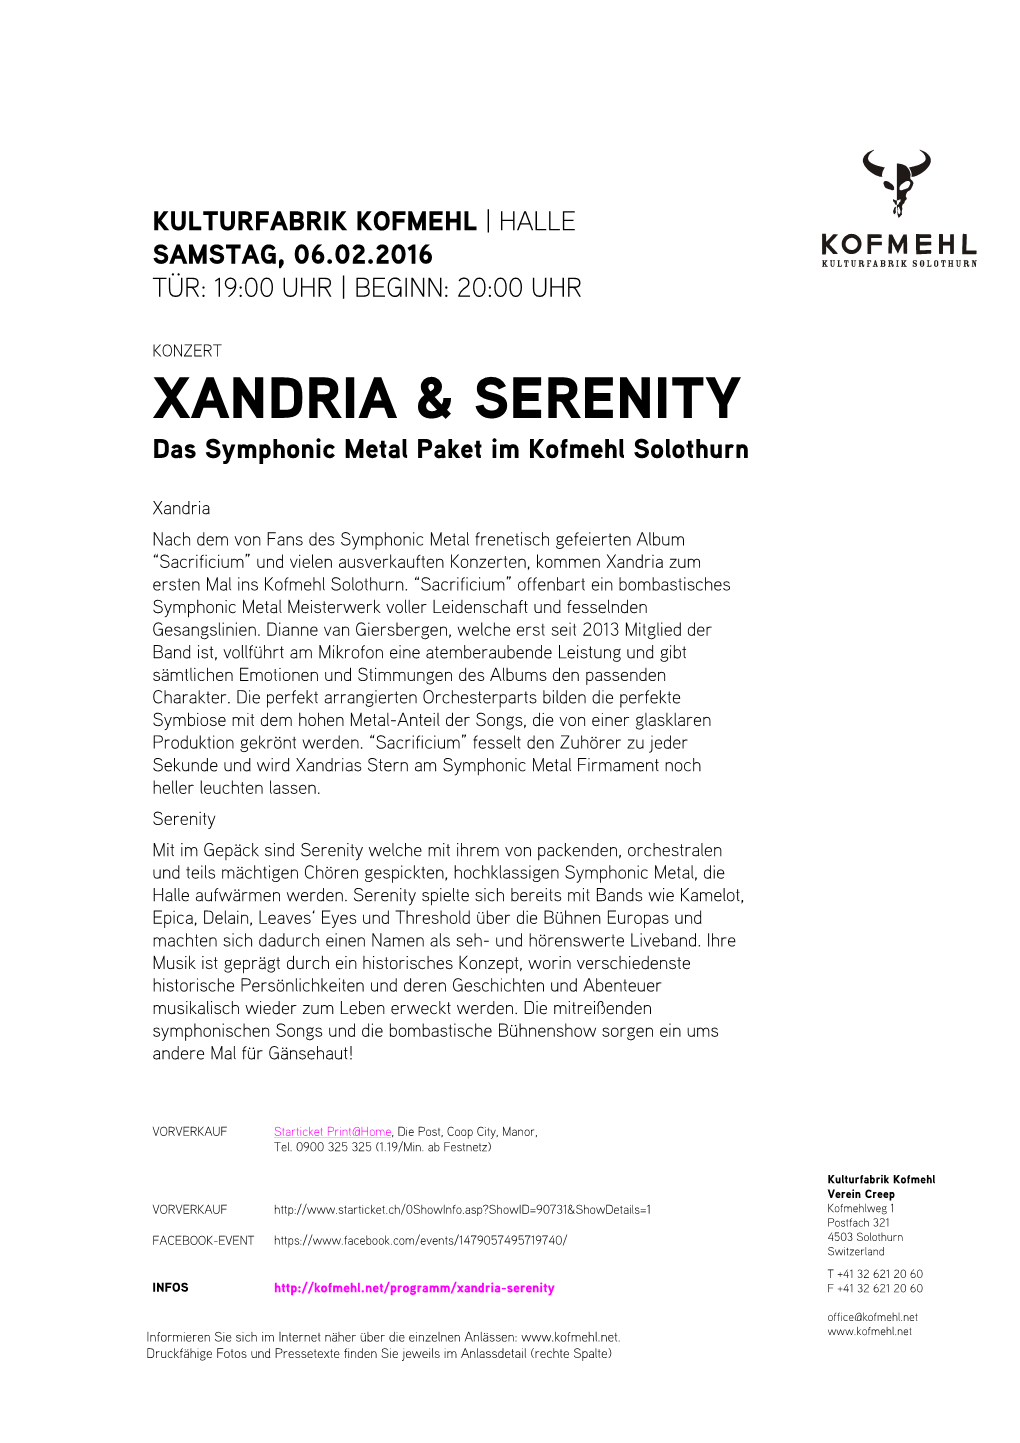 Xandria & Serenity